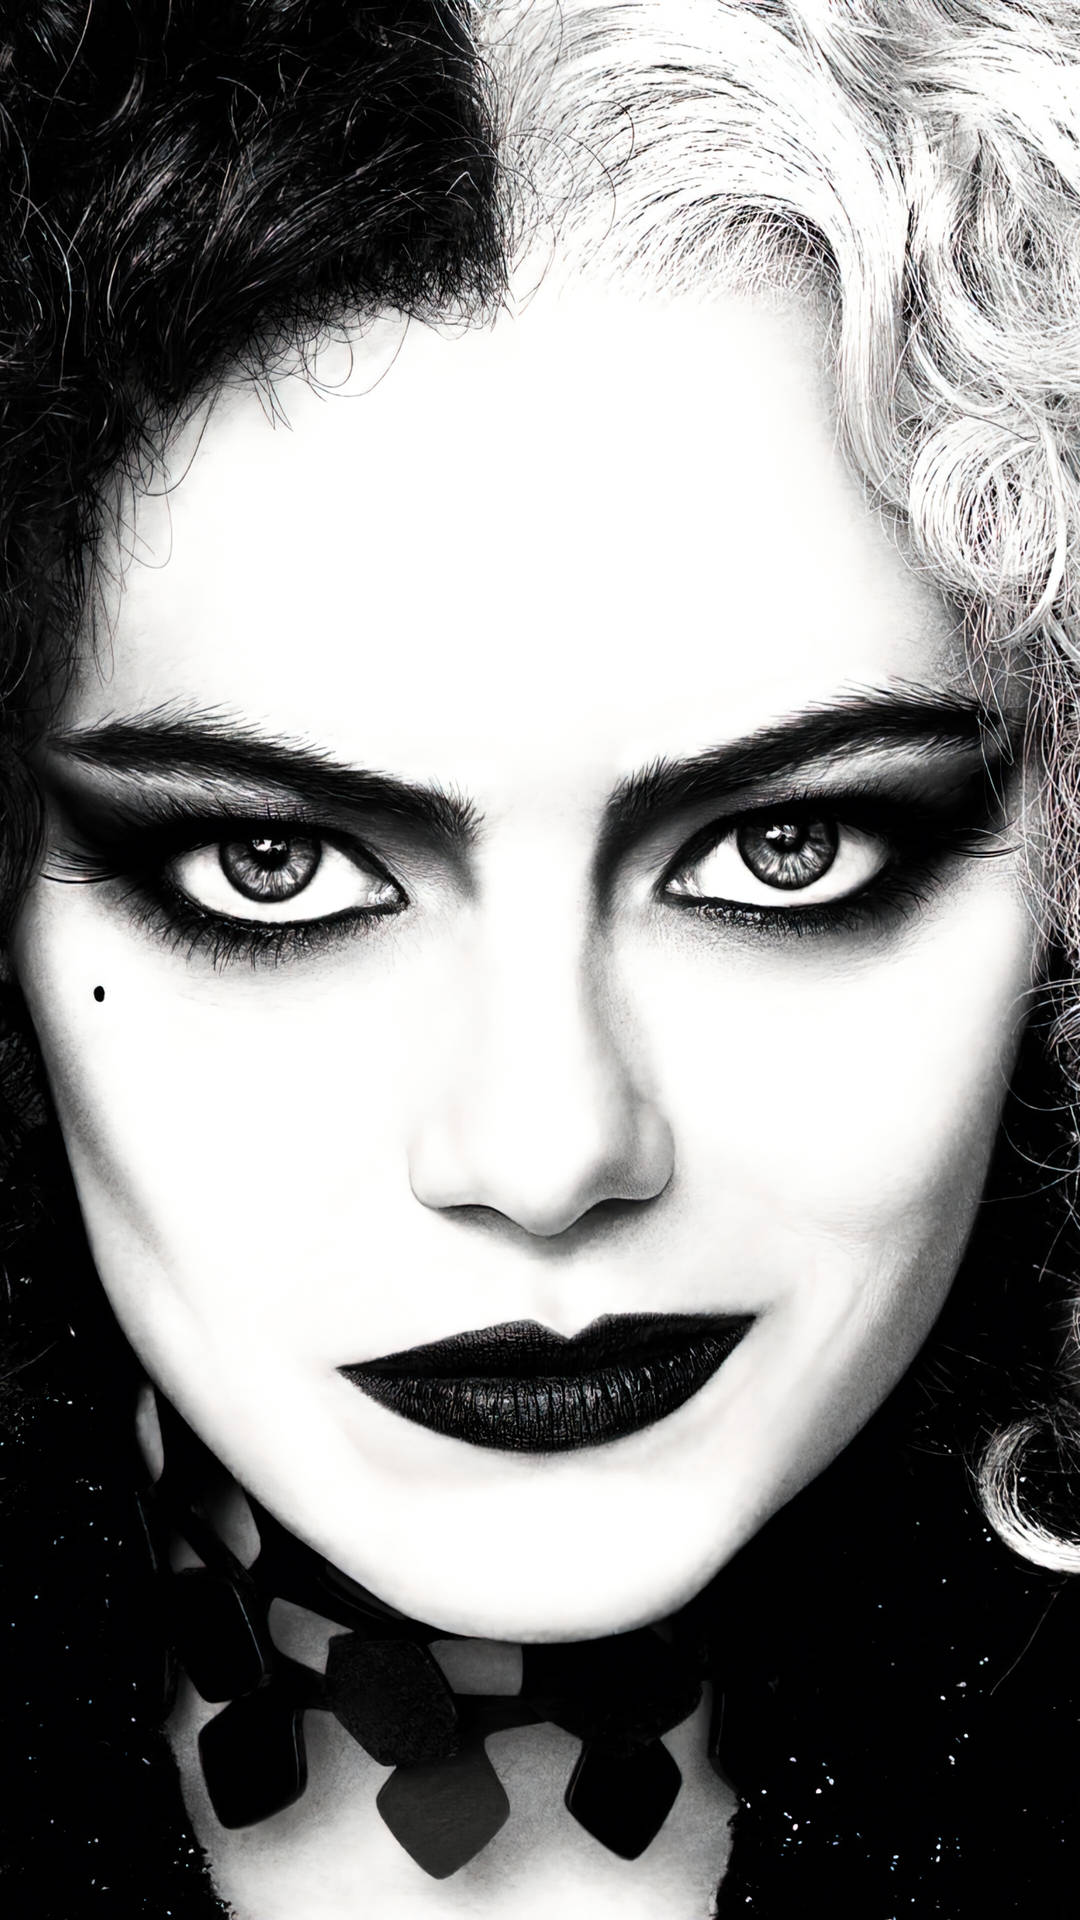 Cruella Black And White Close-Up Wallpaper